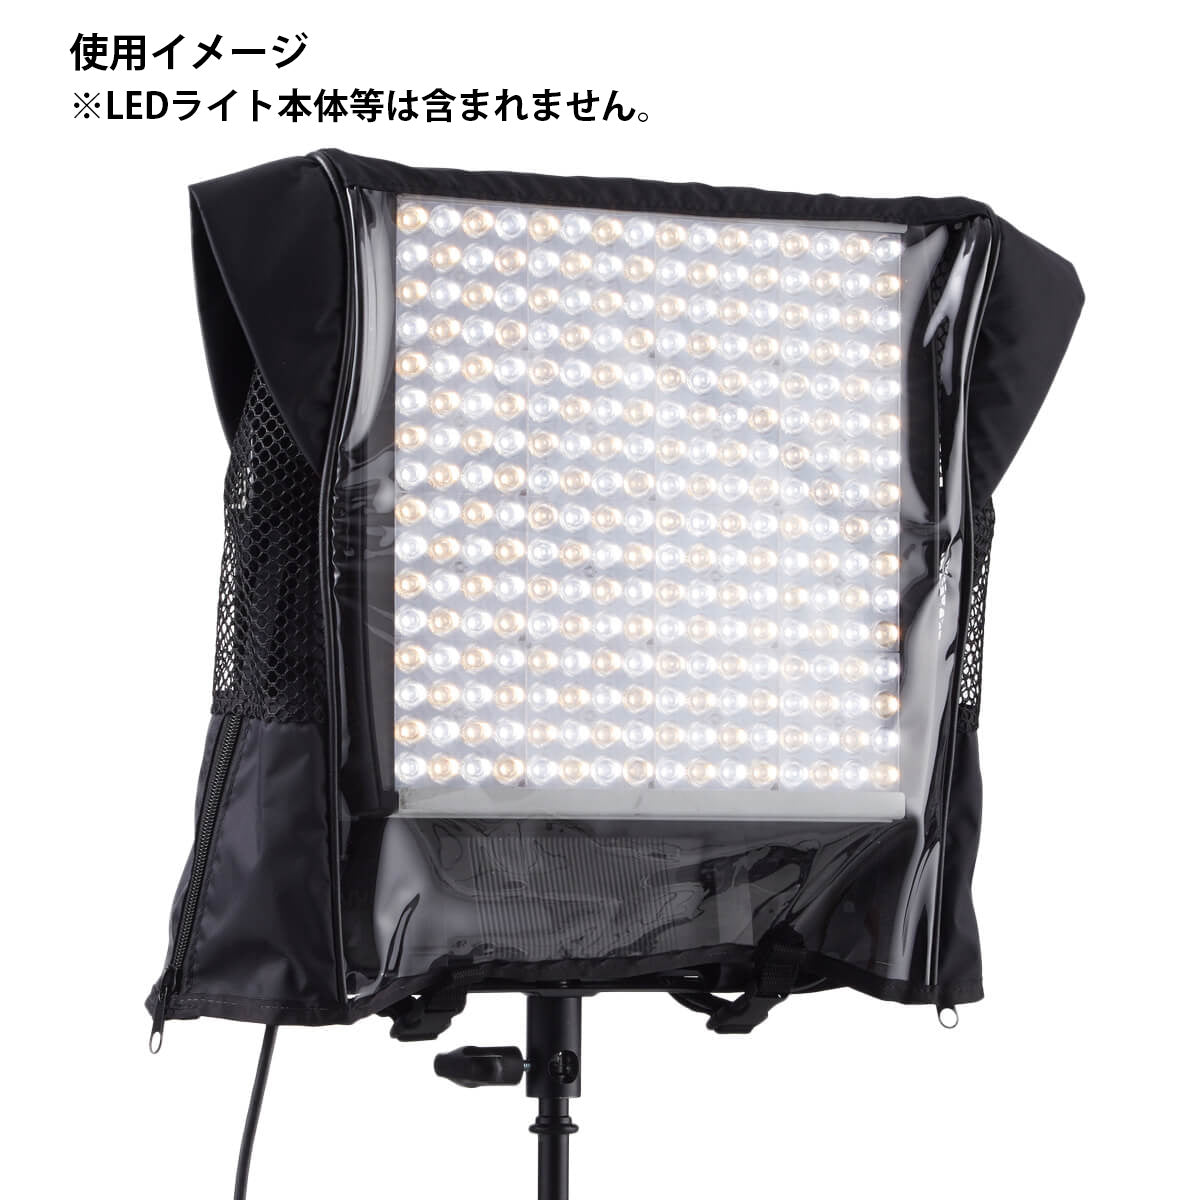 Litepanels(ライトパネルズ) 灯体カバー (900-3509)